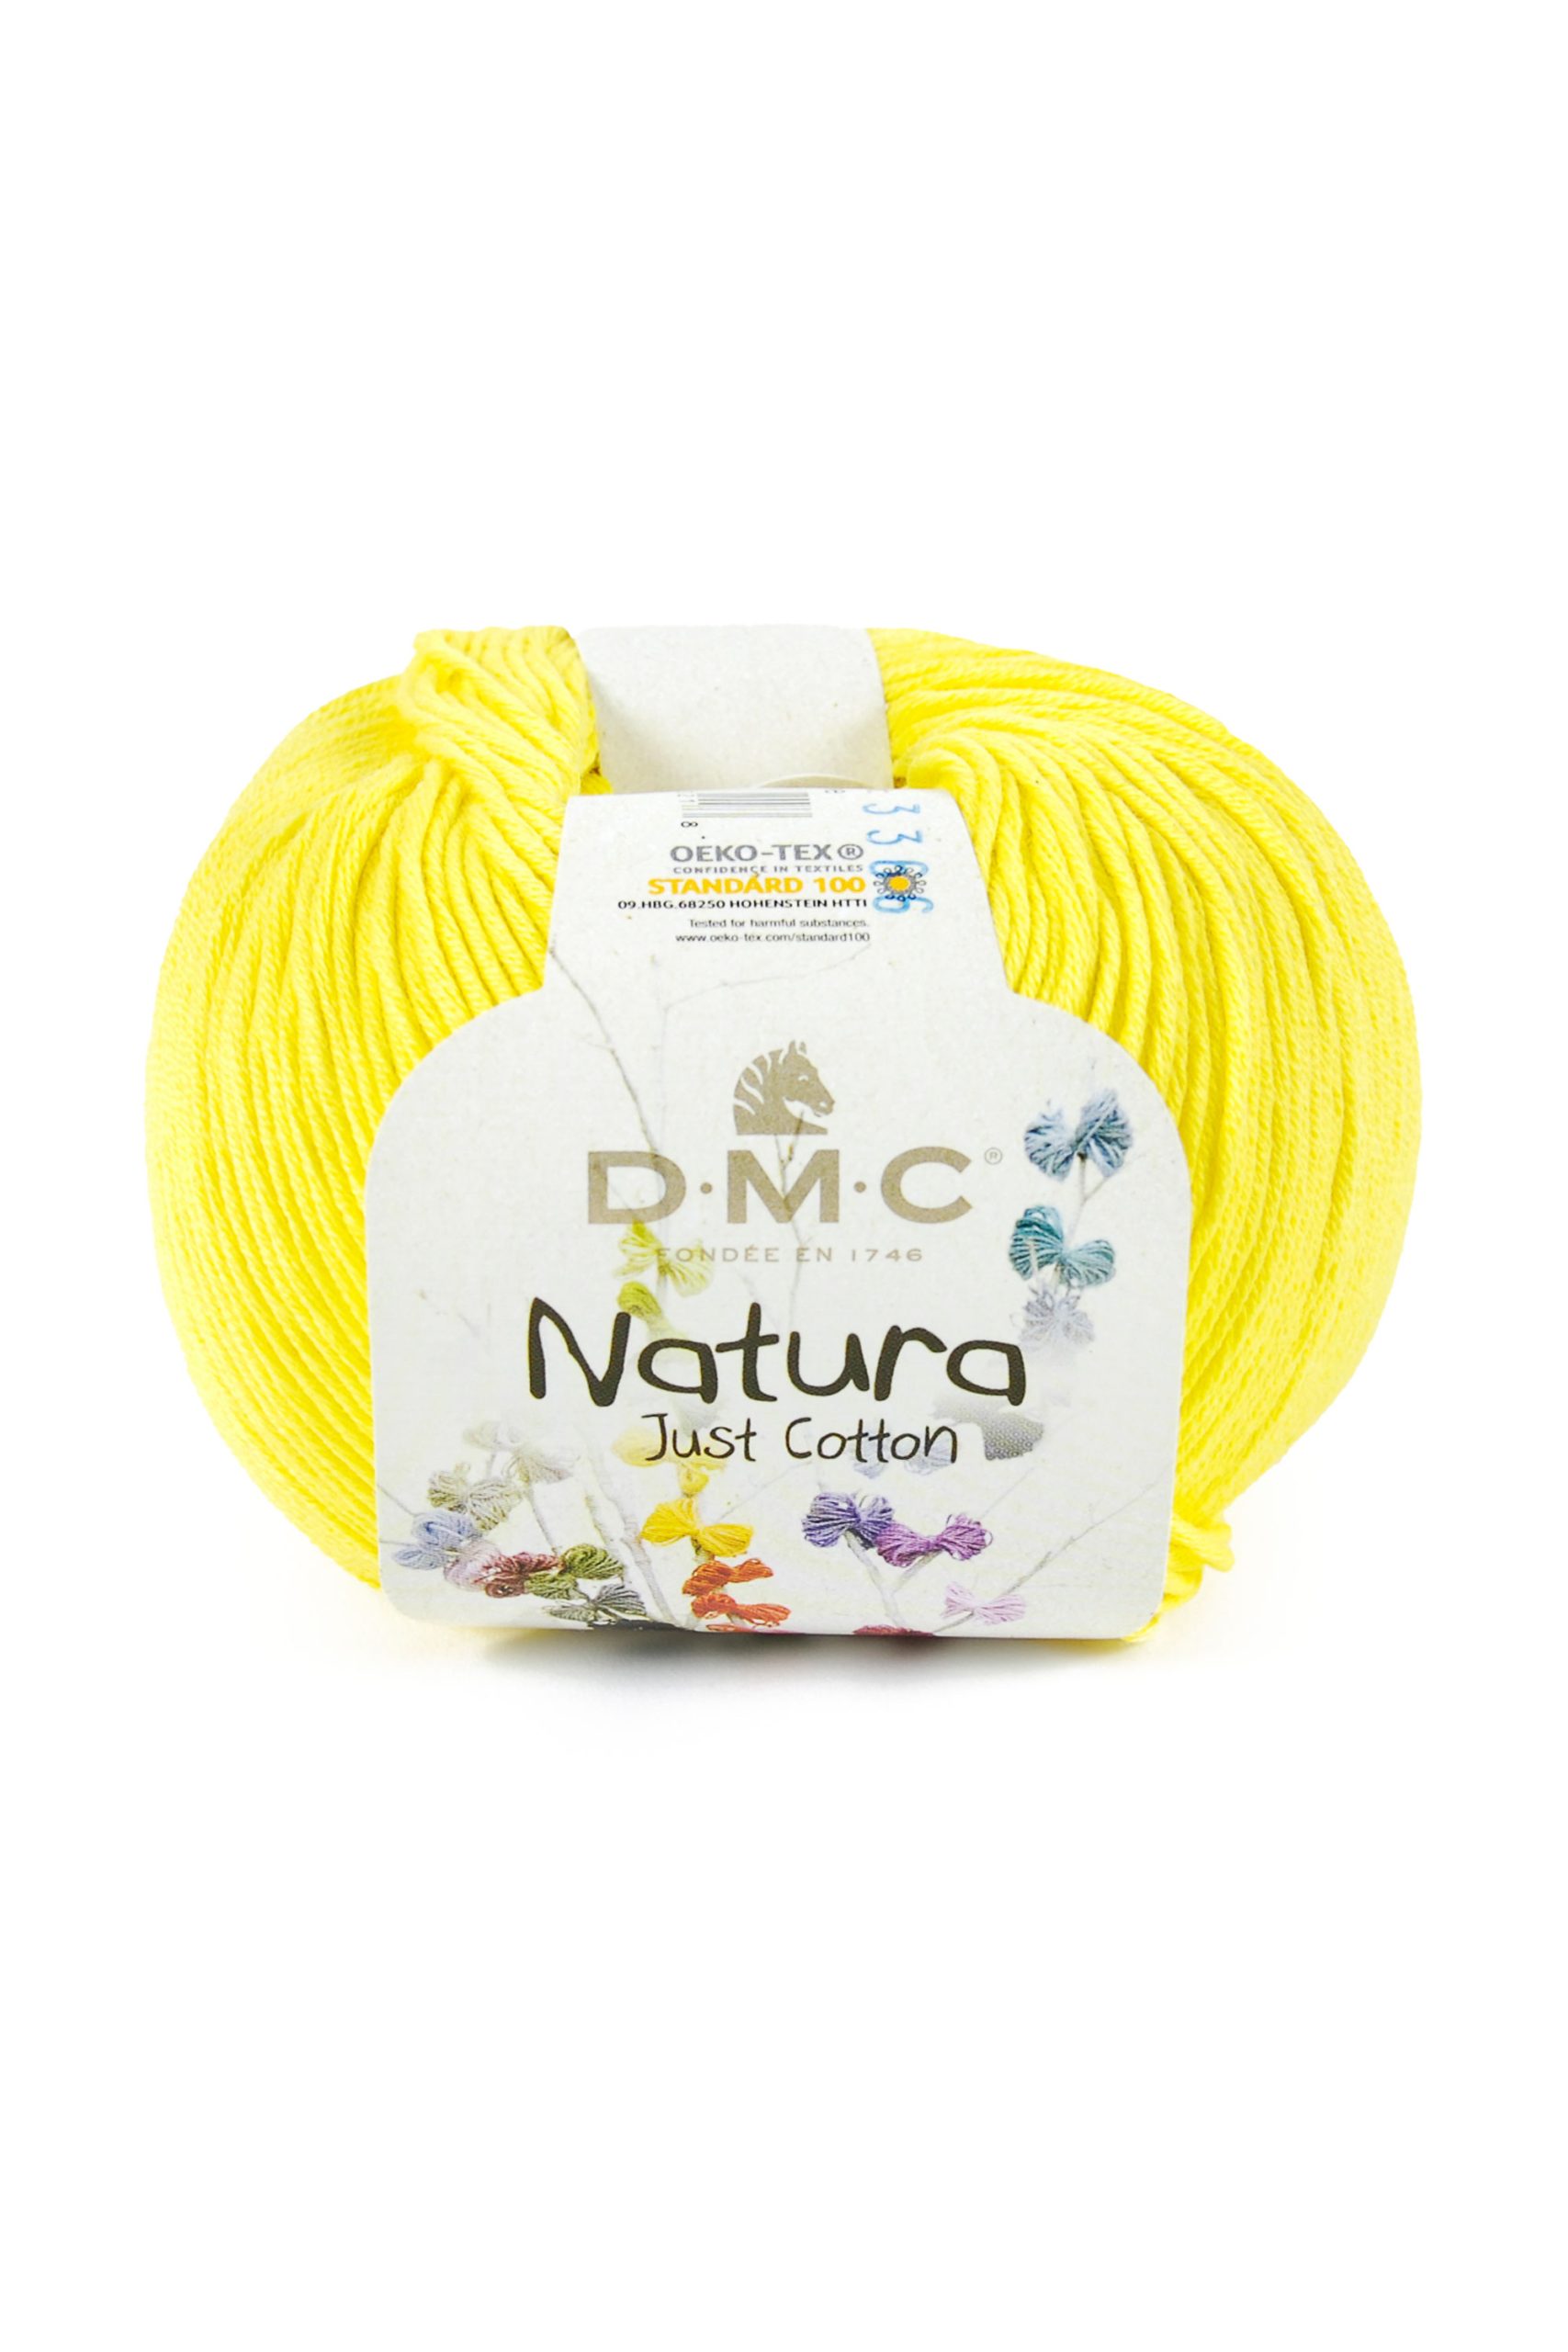 Cotone Dmc Natura Just Cotton Colore N199